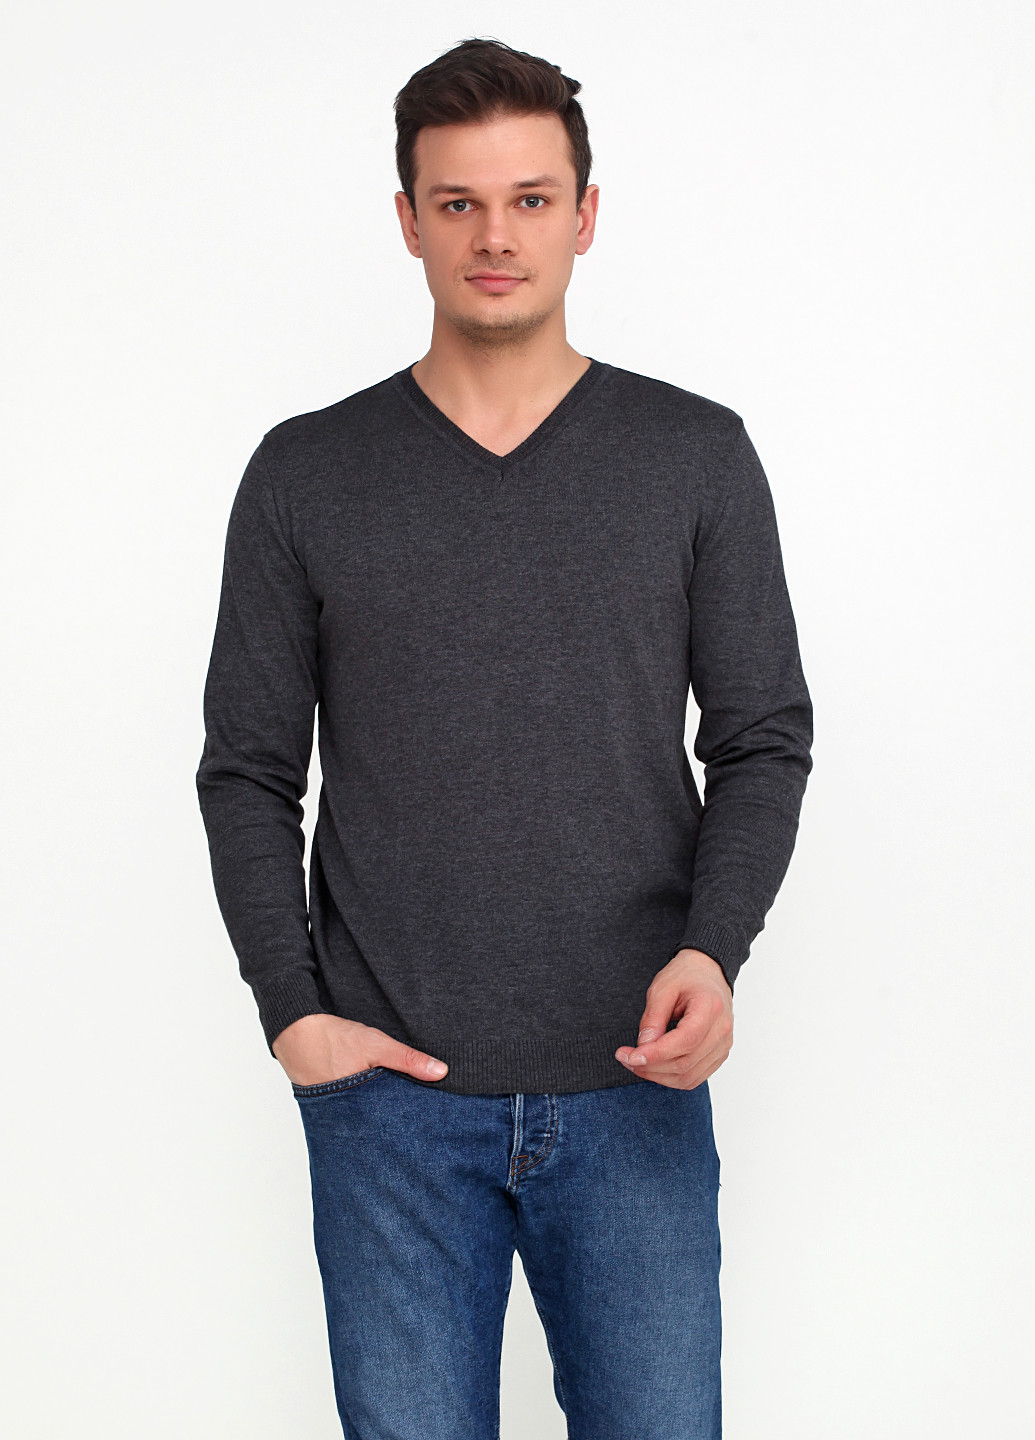 Темно-серый демисезонный пуловер пуловер Zaldiz